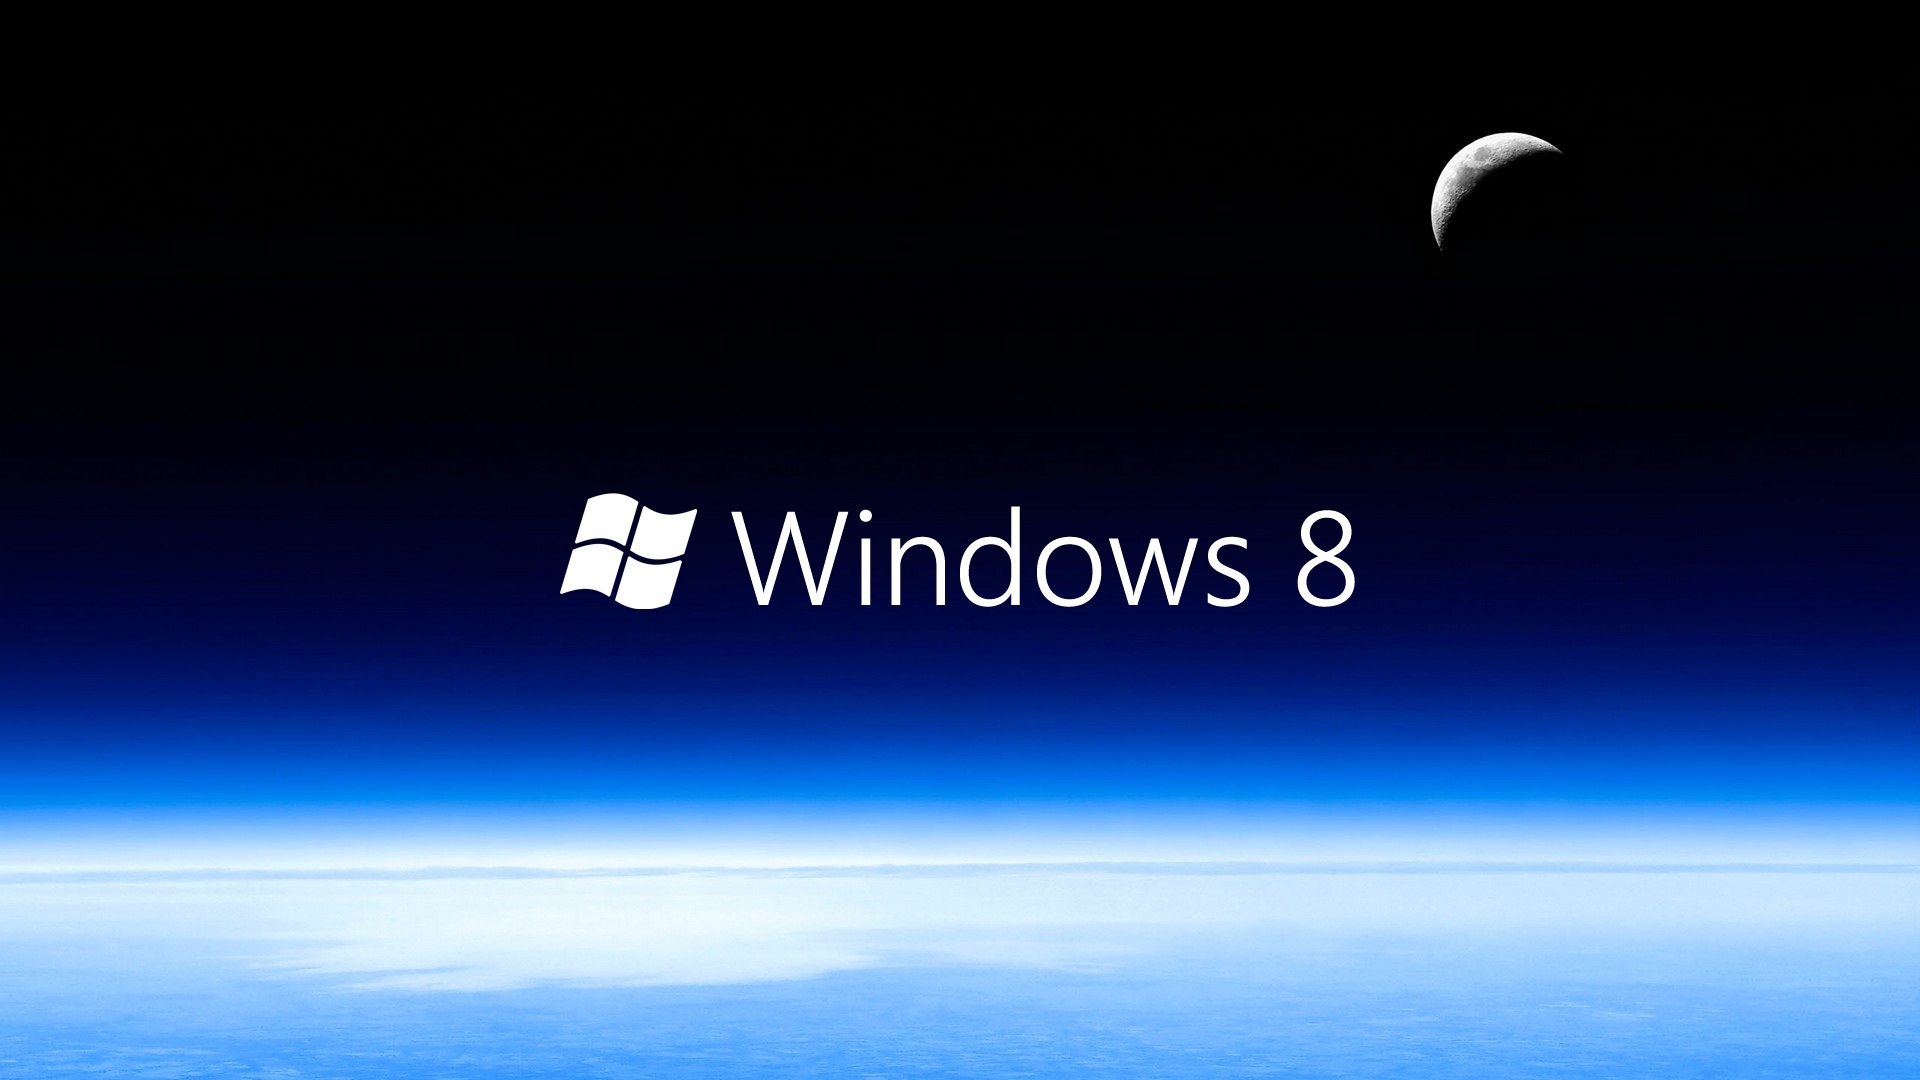 Windows 8 Wallpaper Hd 3d For Desktop Blue